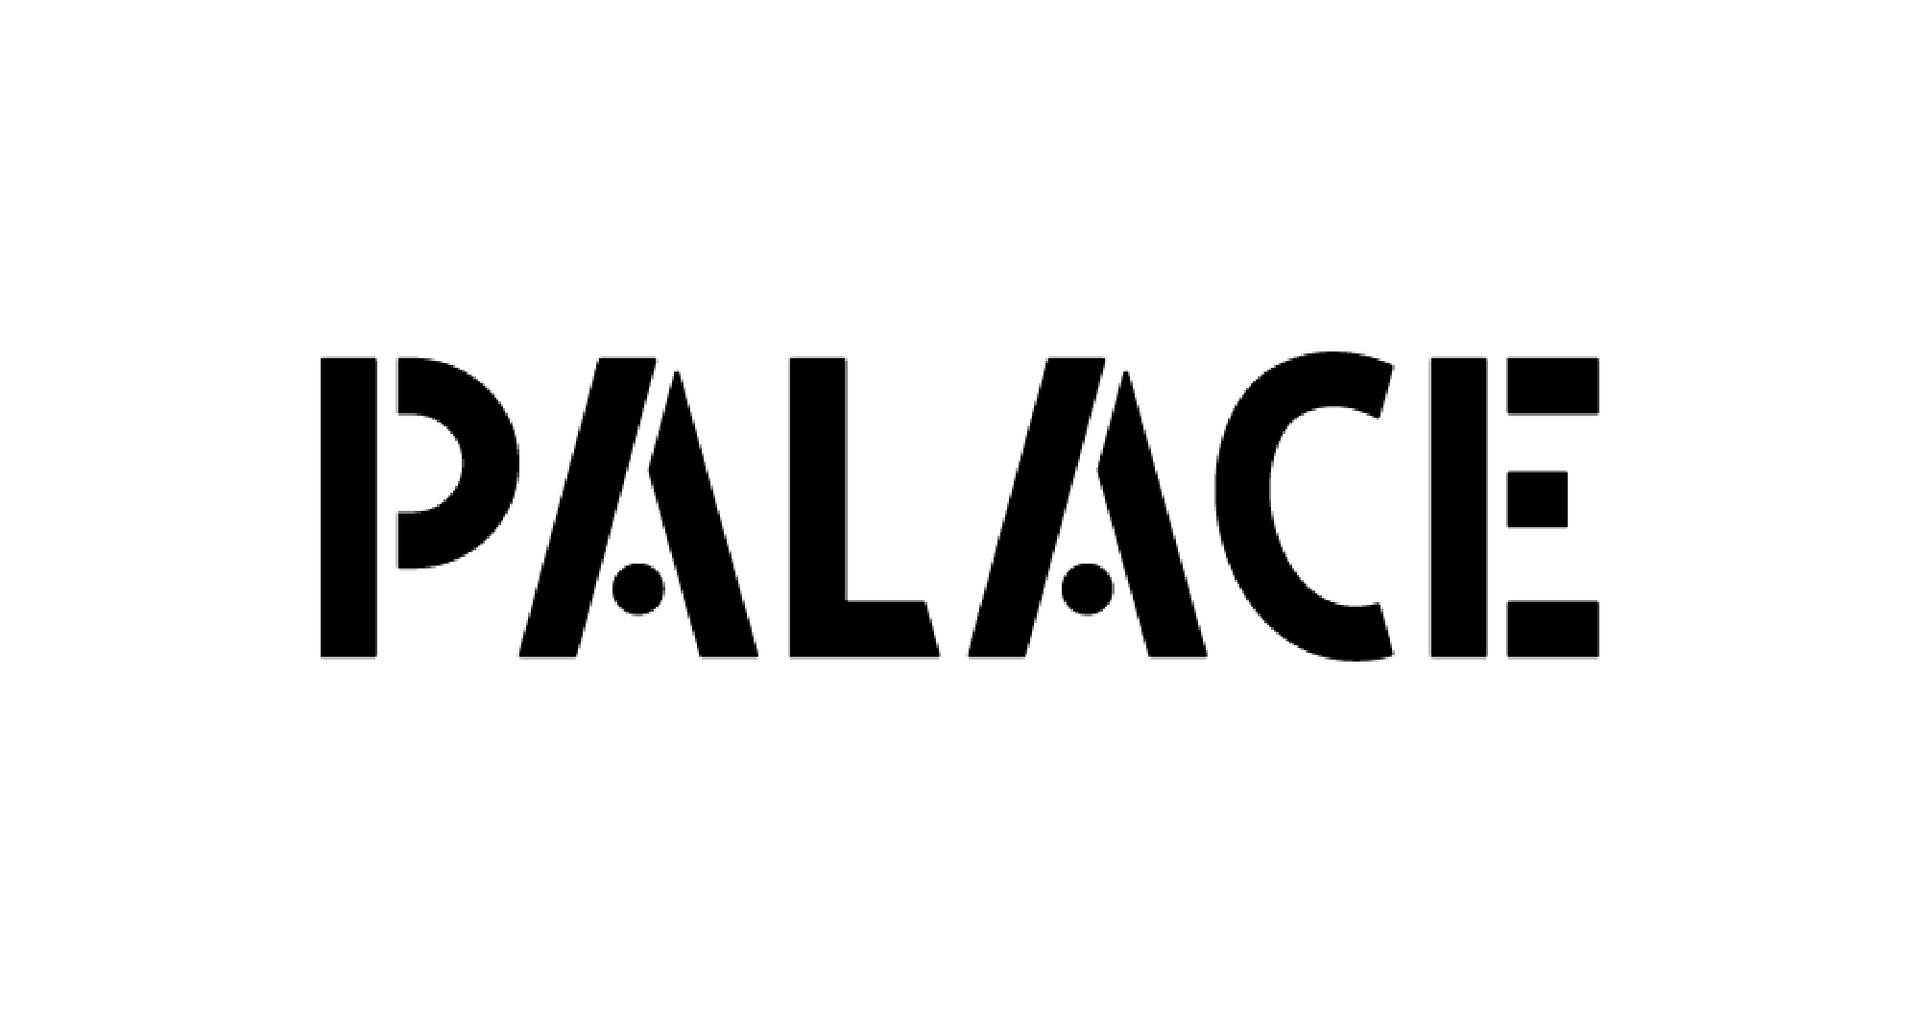 palace logo